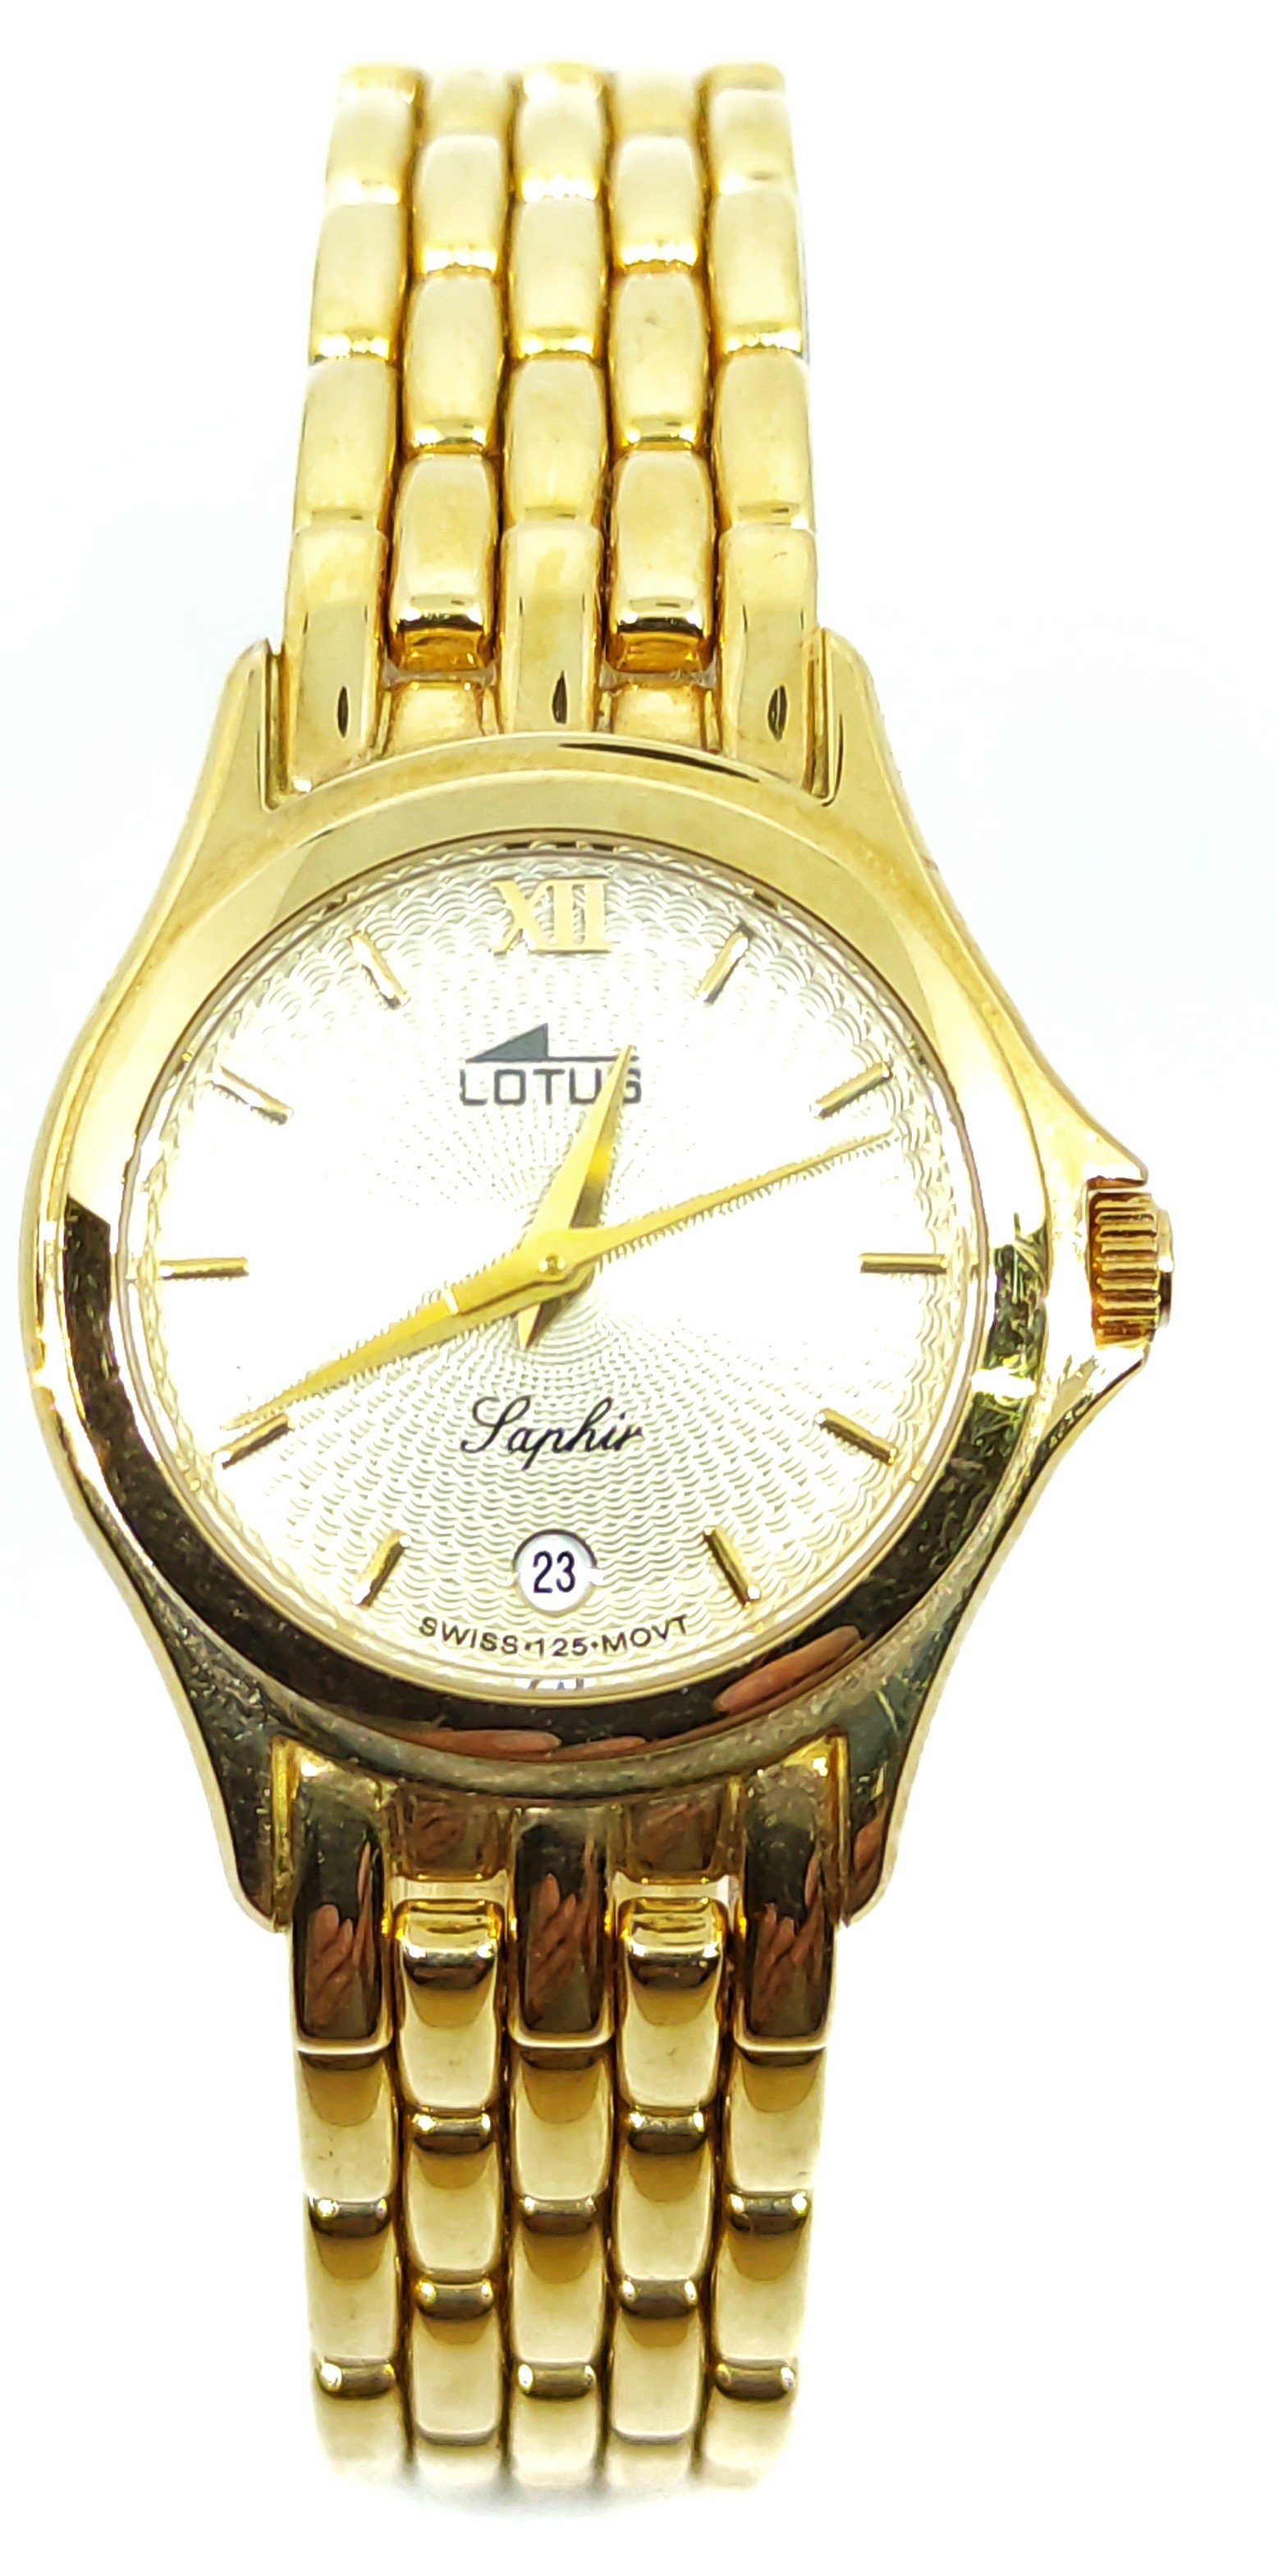 Reloj lotus señora piel y oro de 18 quilates.